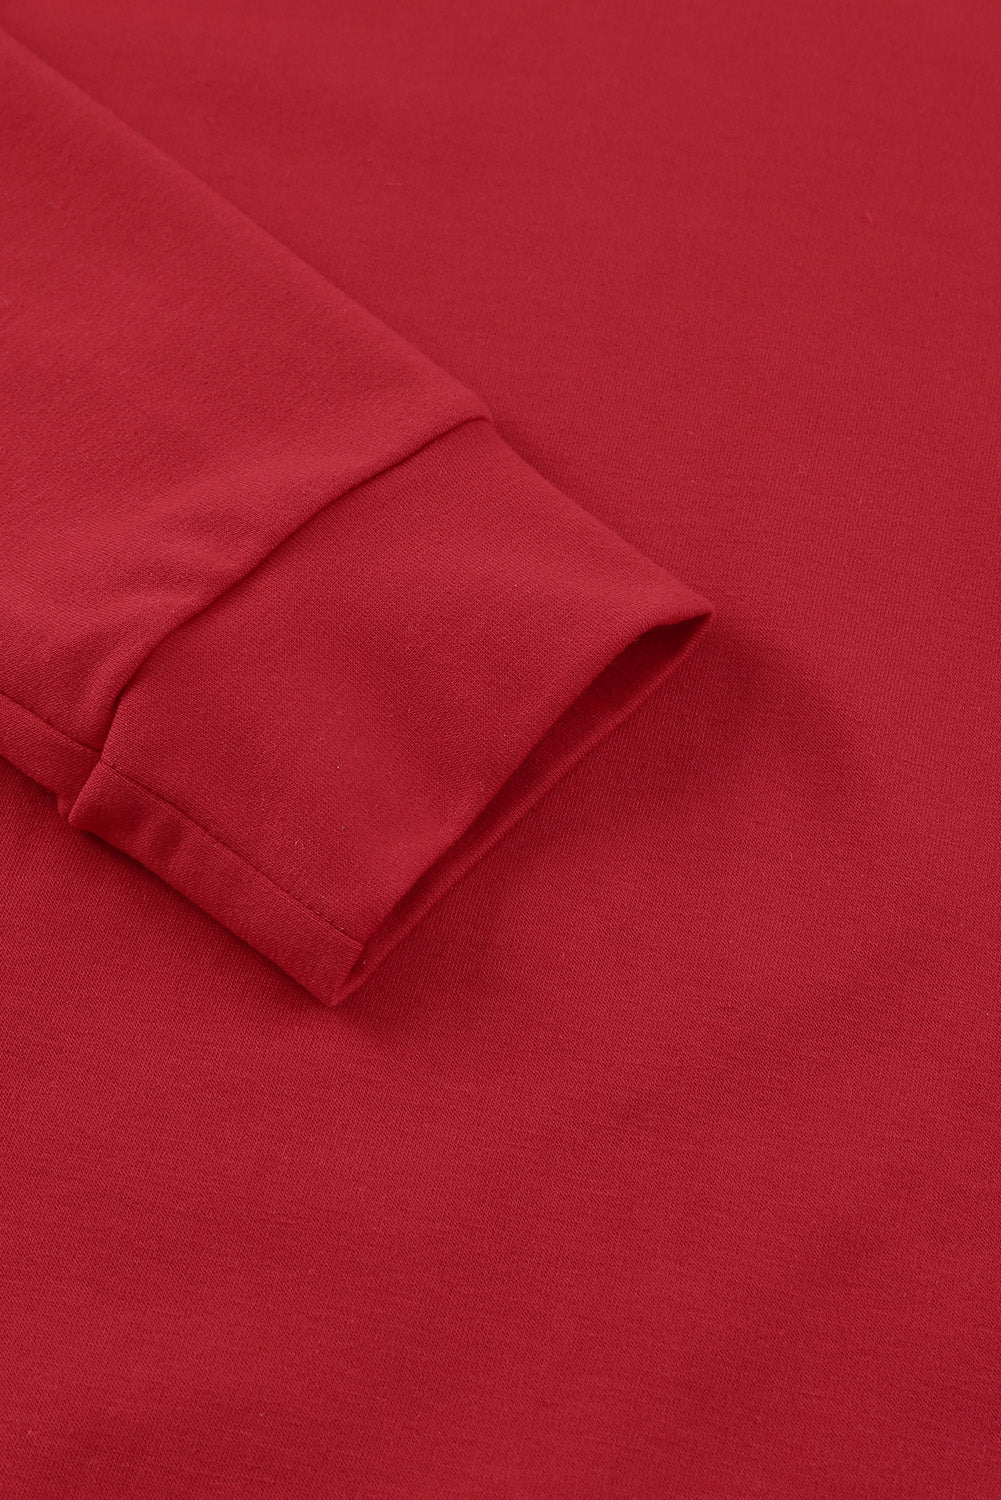 Ognjeno rdeč enobarvni pulover z okroglim ovratnikom in raglan rokavi